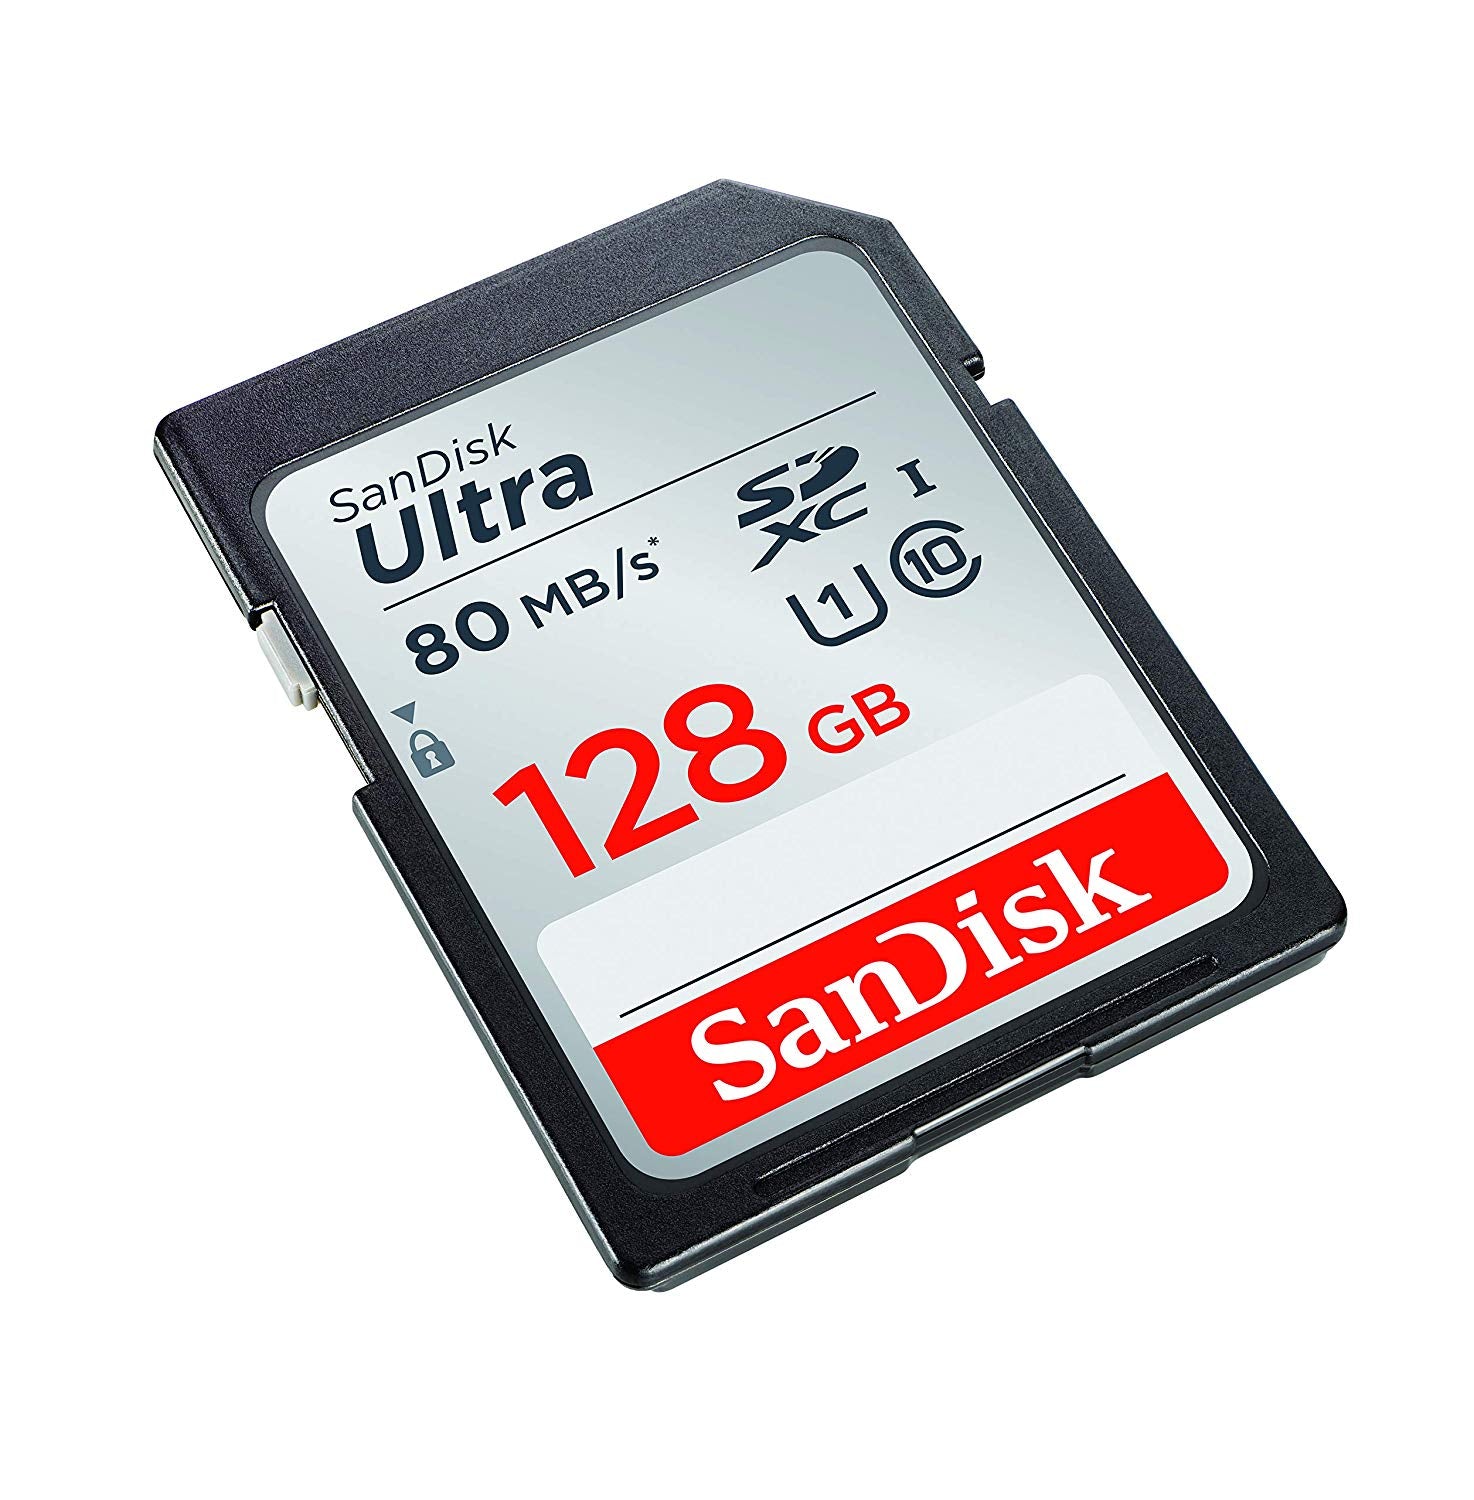 Carte mémoire SD haute vitesse Microdrive de classe 10 de 128 Go pour tous  les appareils